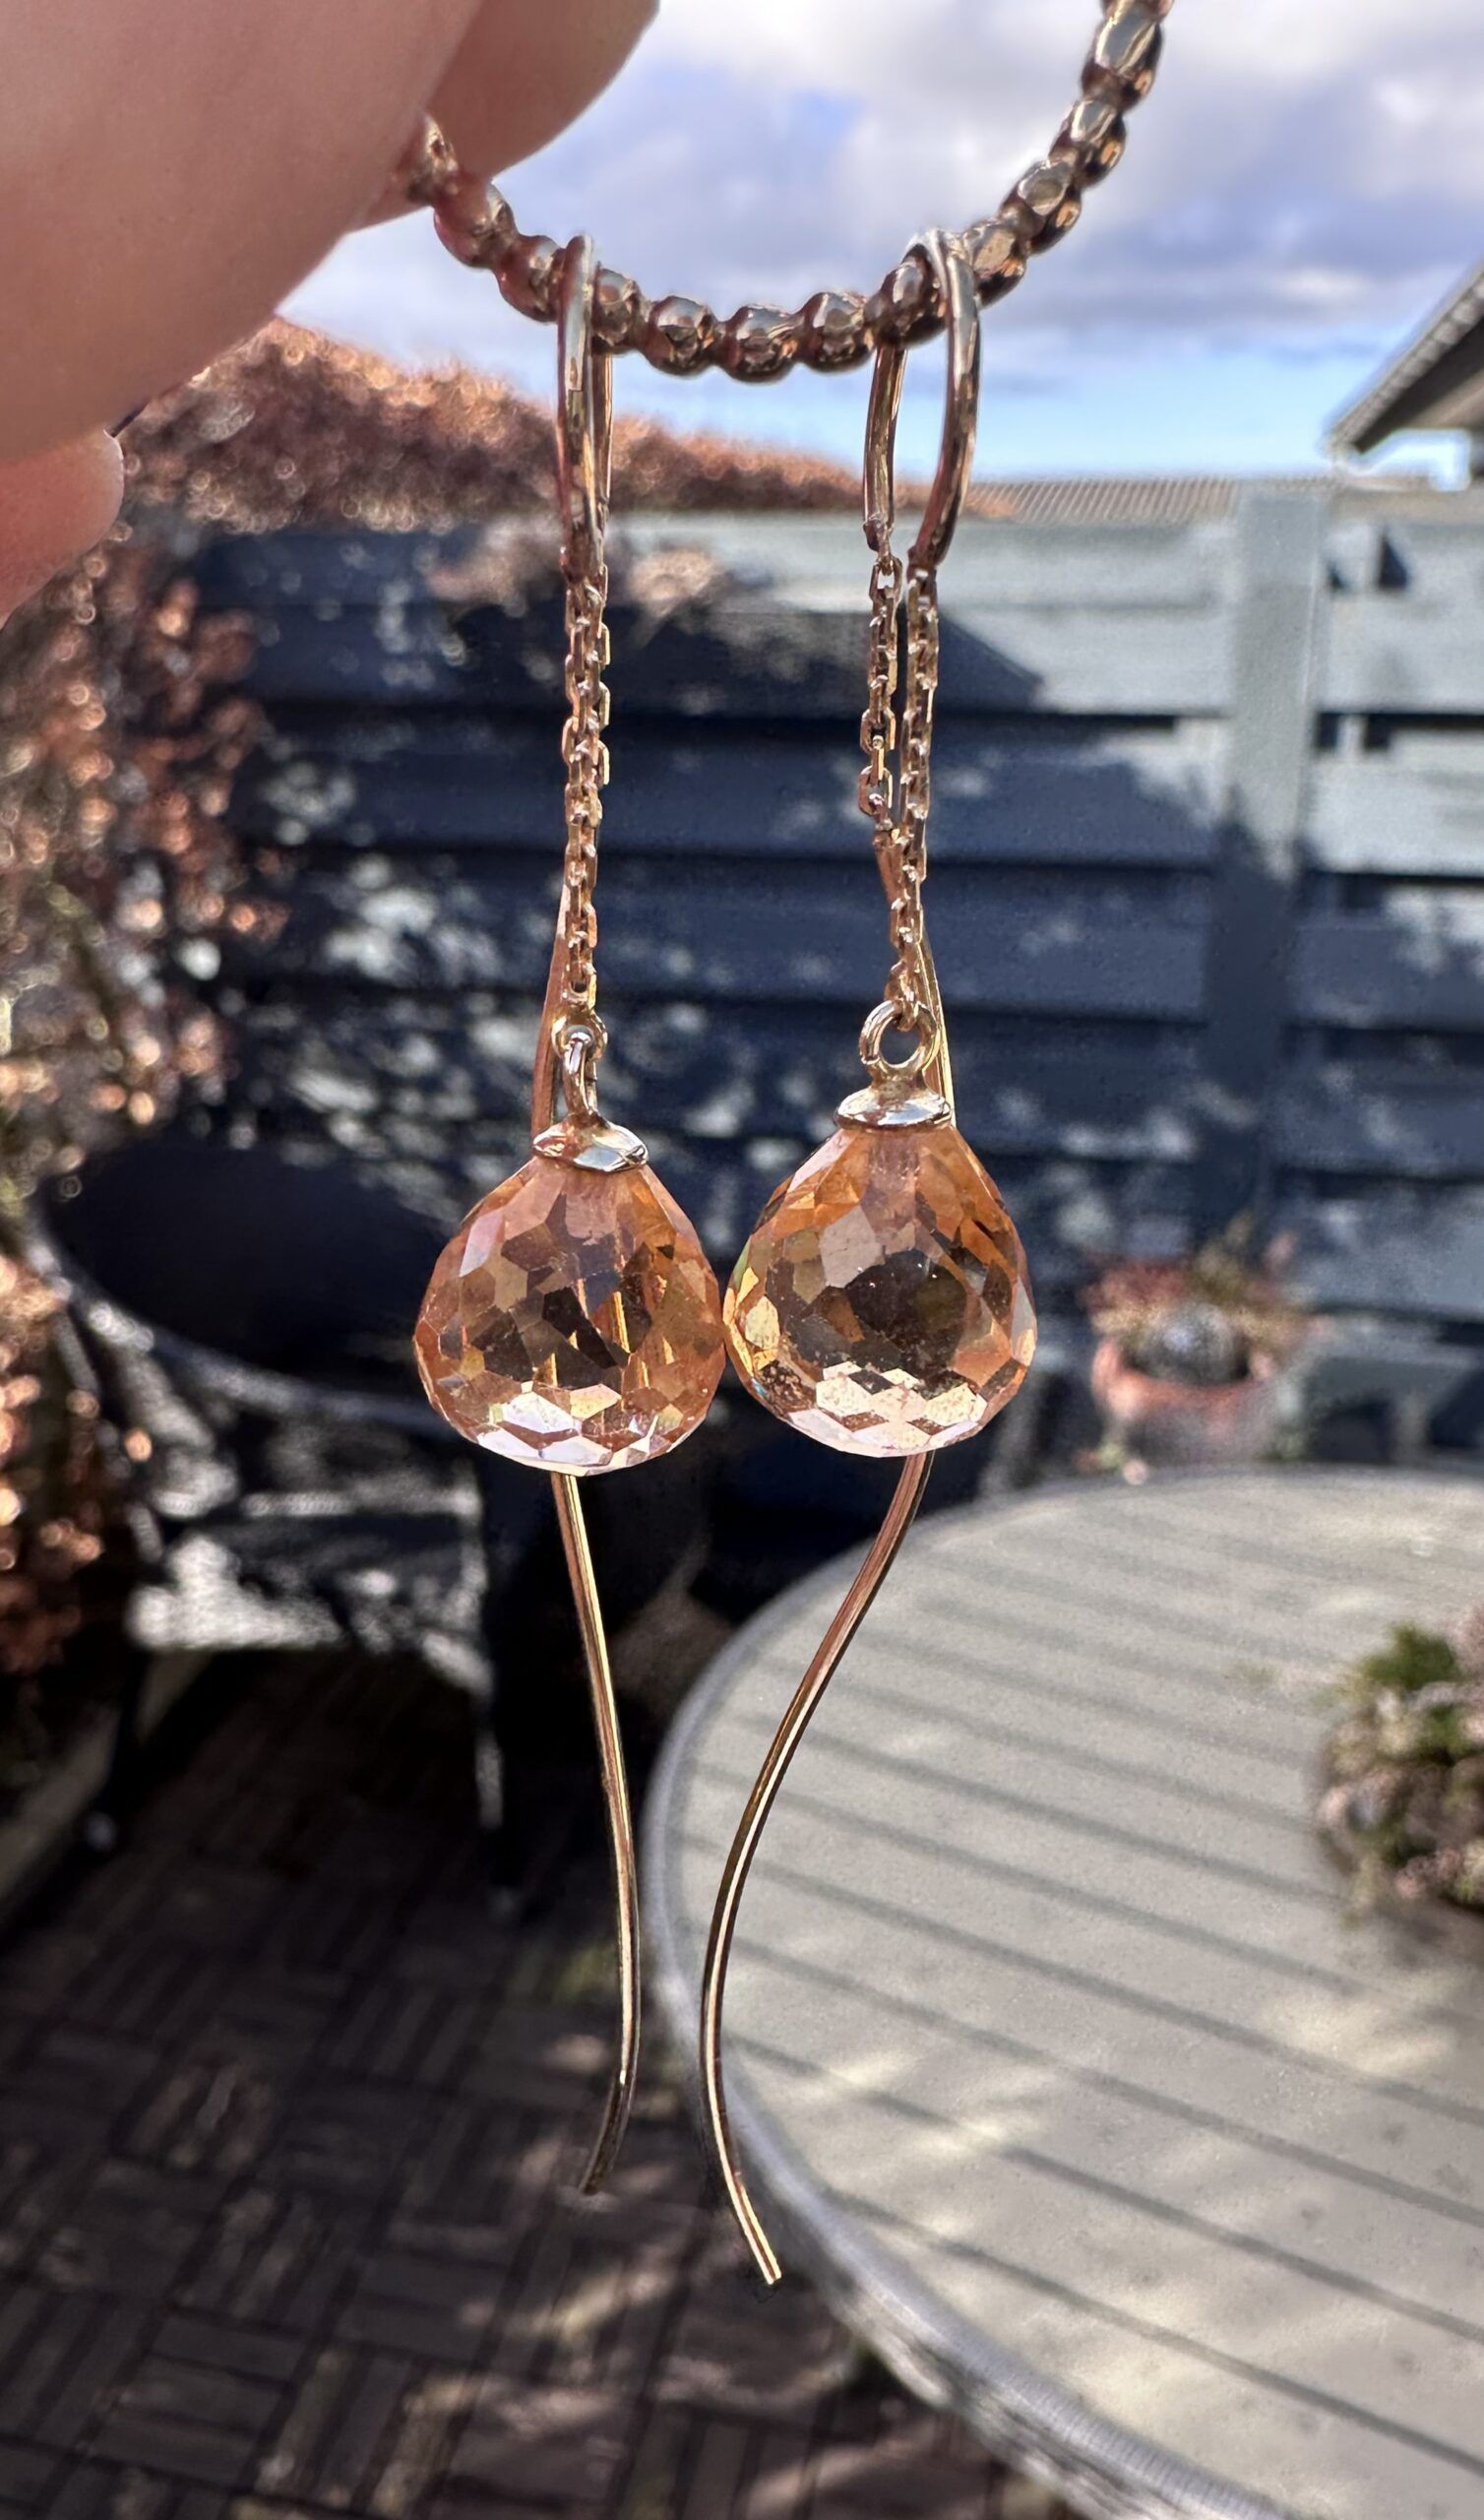 mikrofon tvilling Bare gør håndlavede design hænge øreringe fra Charlotts Diamonds på 6,3 g. m.  fersken farvede briolette slebet topaser sat i 14 karat guld.